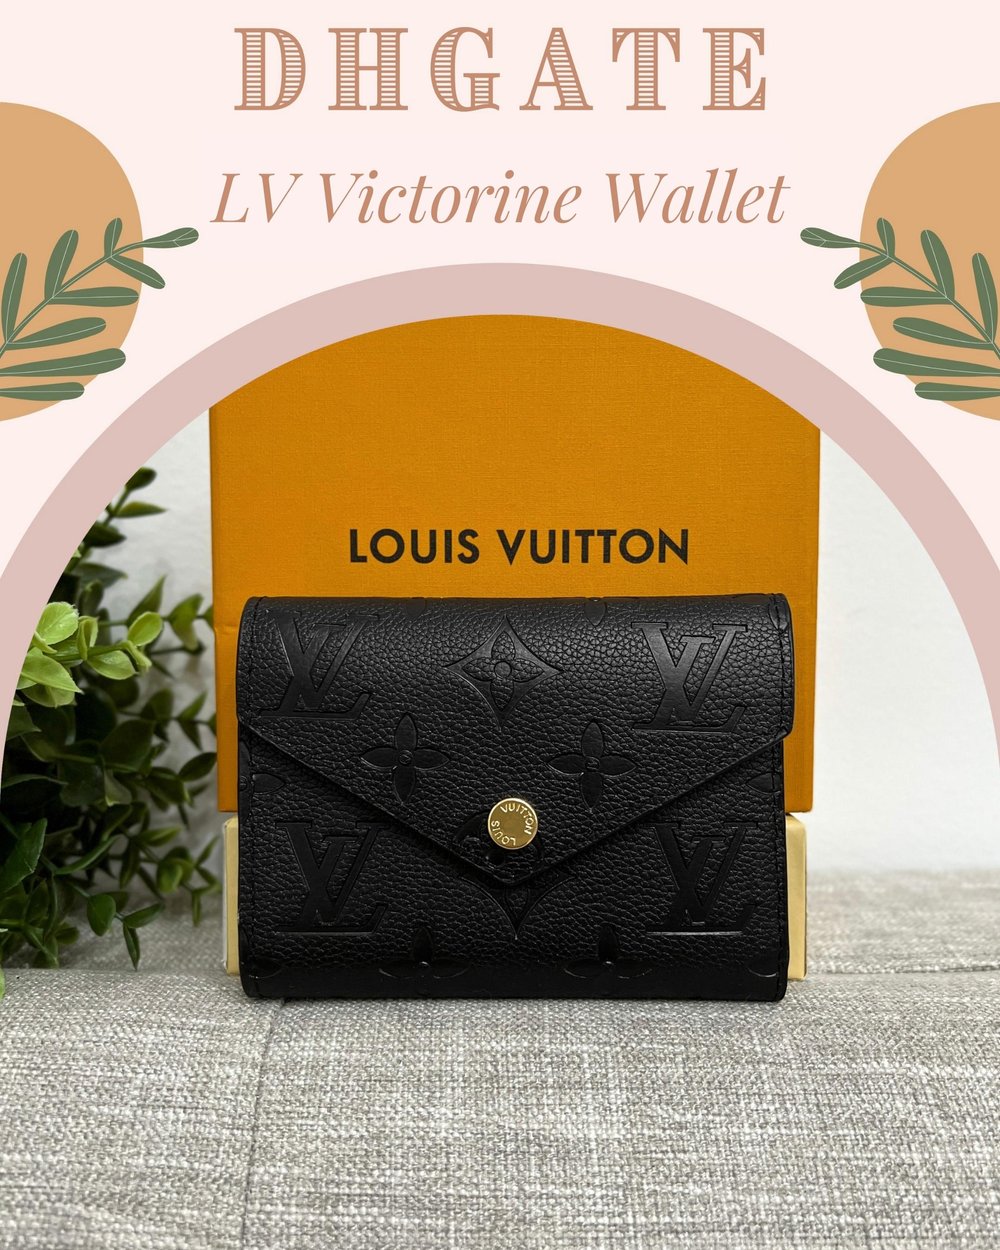 Dhgate Louis Vuitton Purses Bags